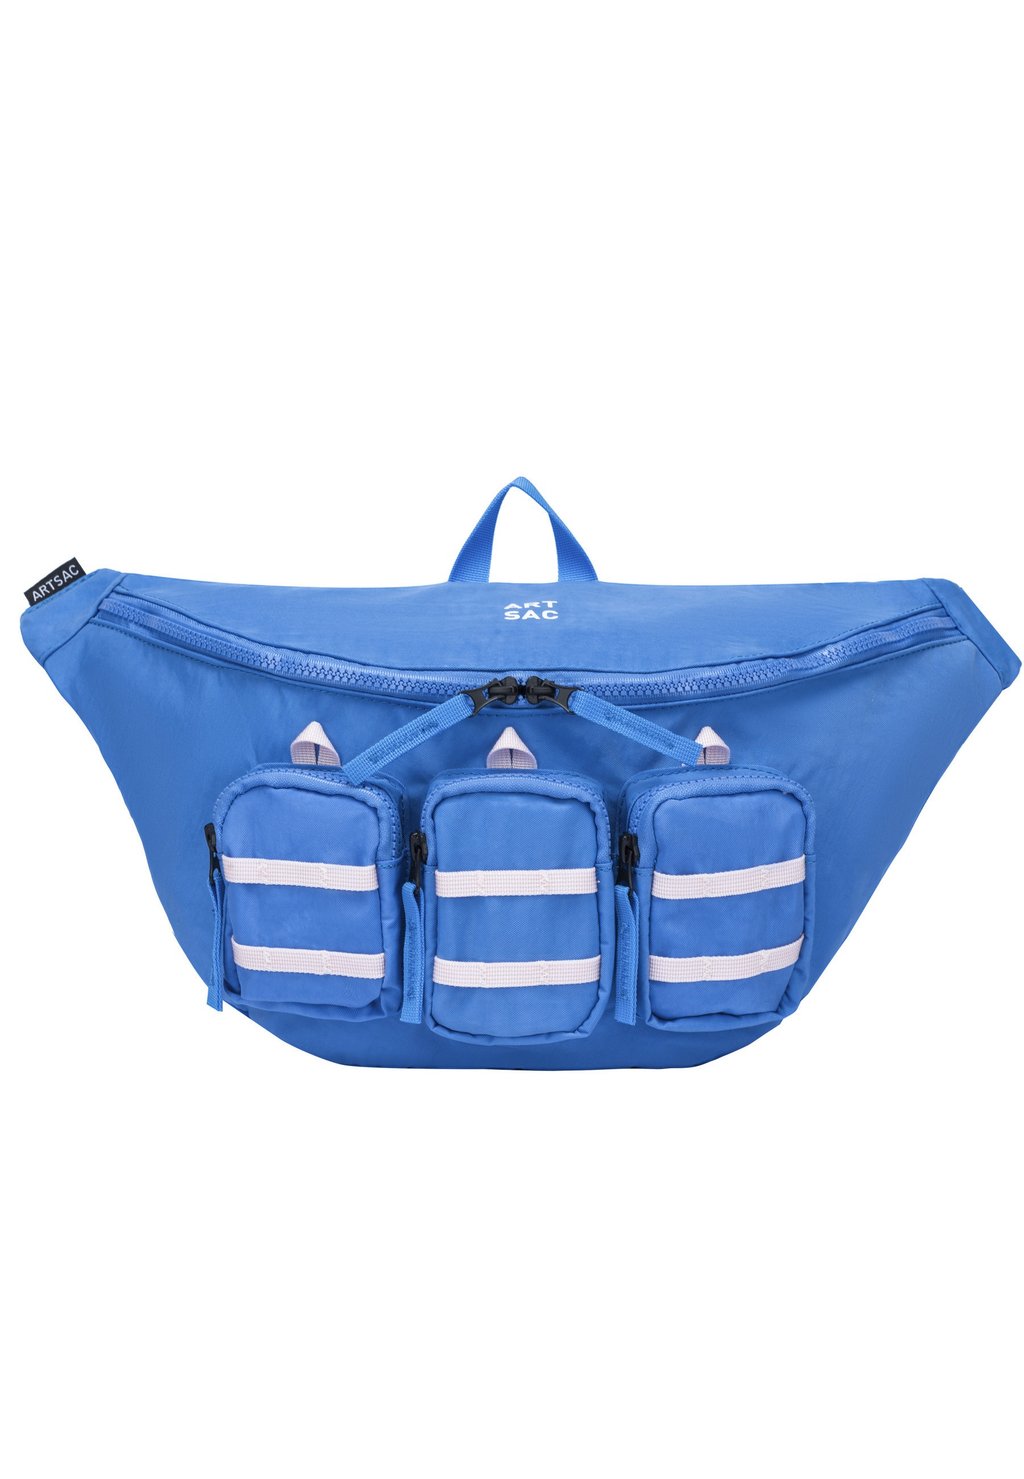 Поясная сумка Artsac, синий